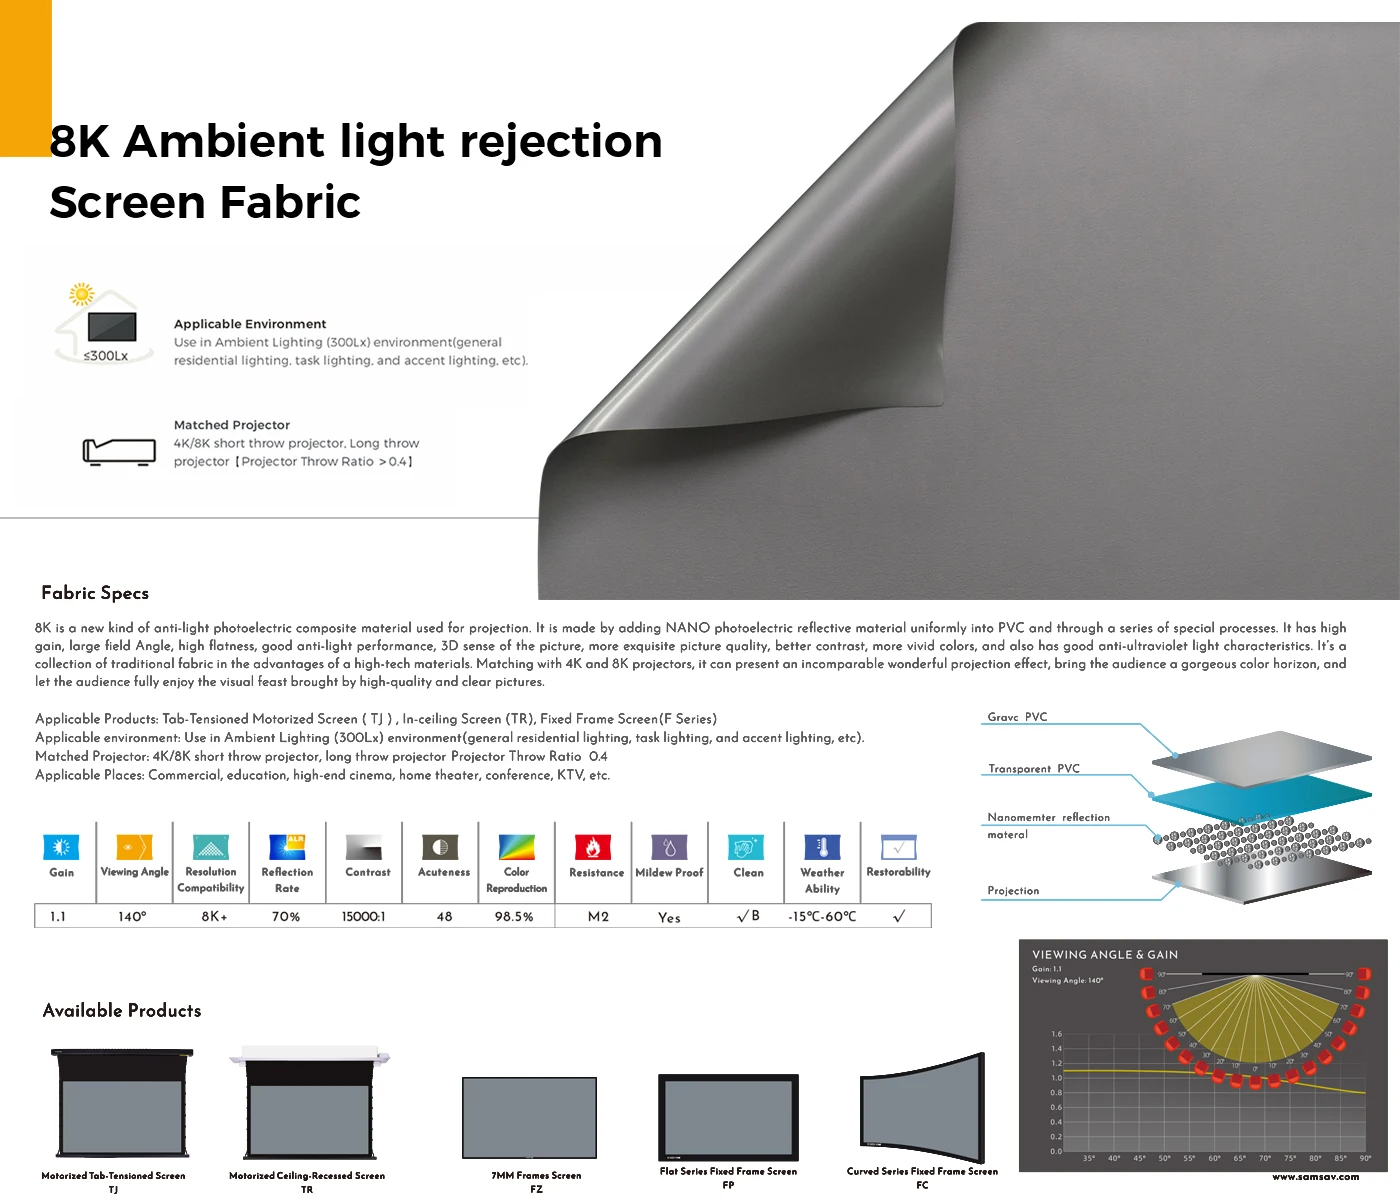 Проекционный экран SCREENPRO 92-100 дюймов ALR, серый для видеопроектора с коротким/длинным ходом HD 4K, отражающий экран 16: 9